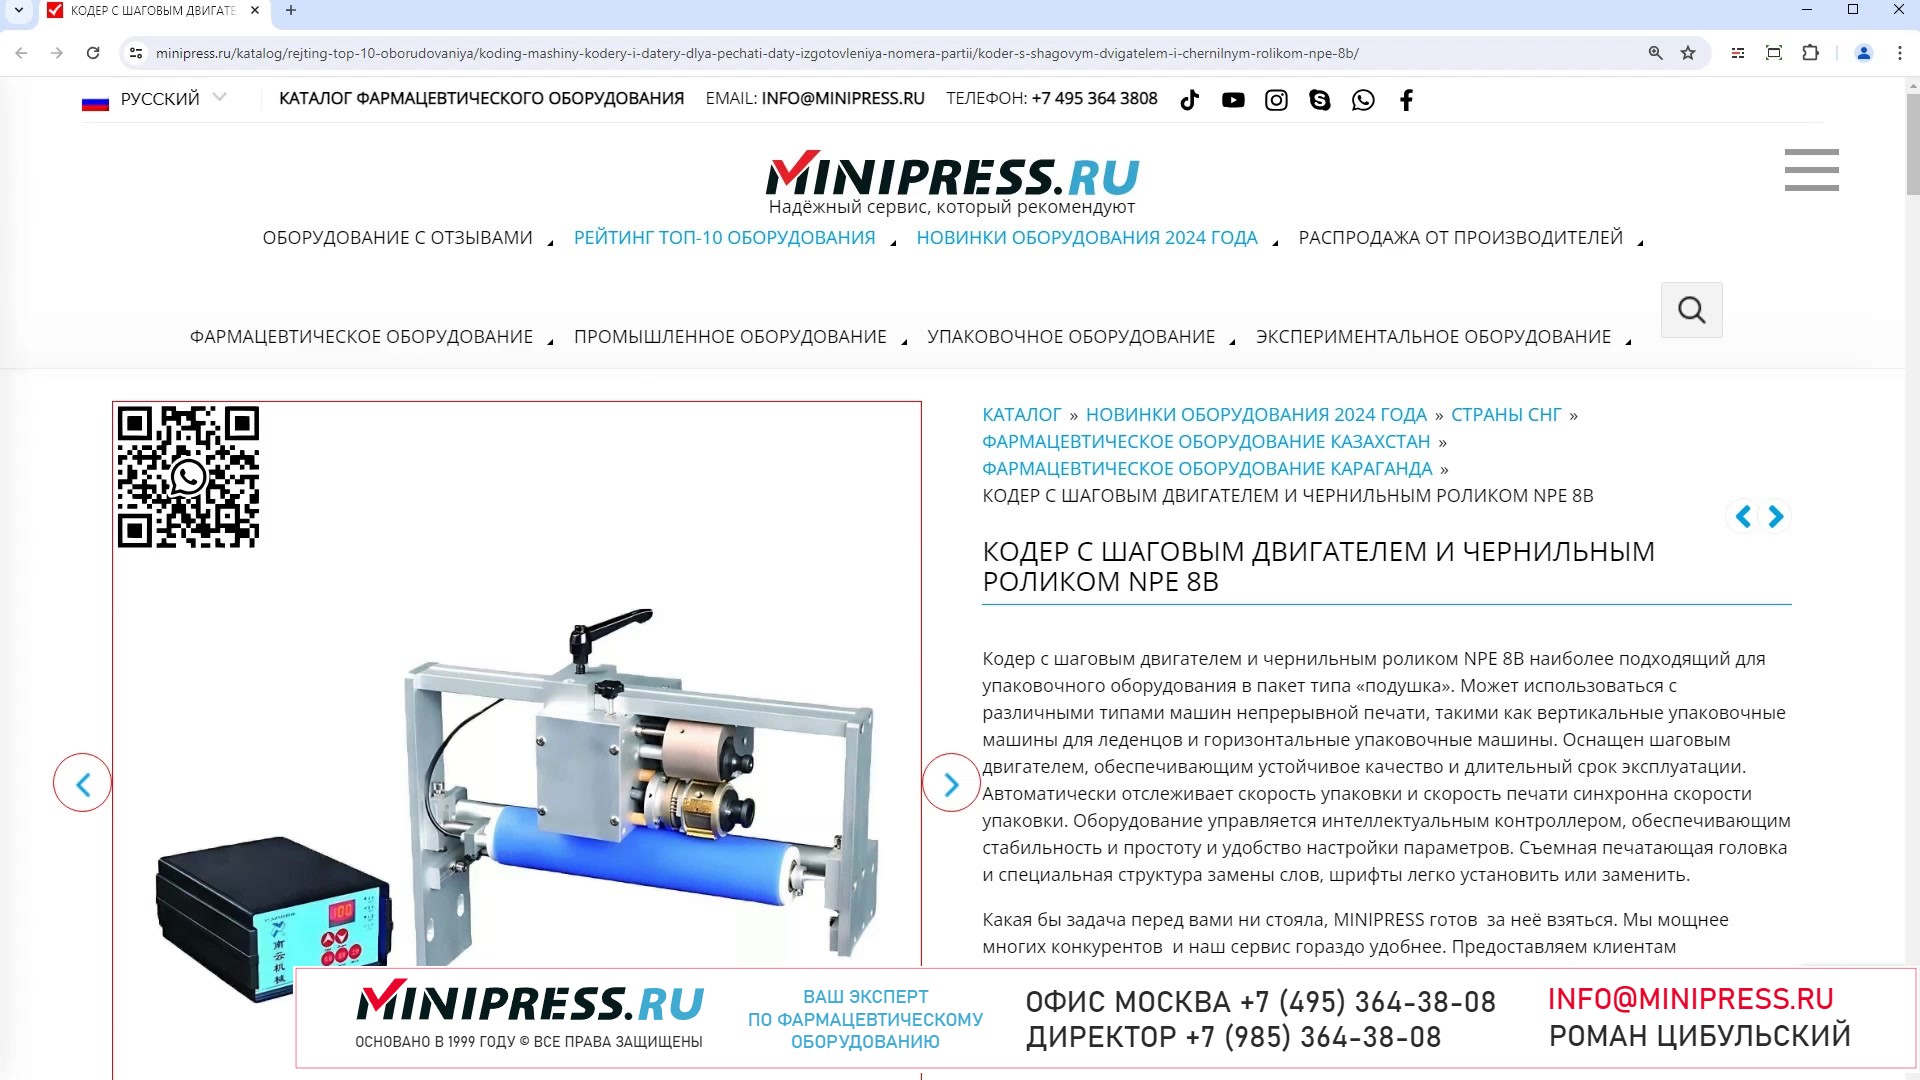 Minipress.ru Кодер с шаговым двигателем и чернильным роликом NPE 8B